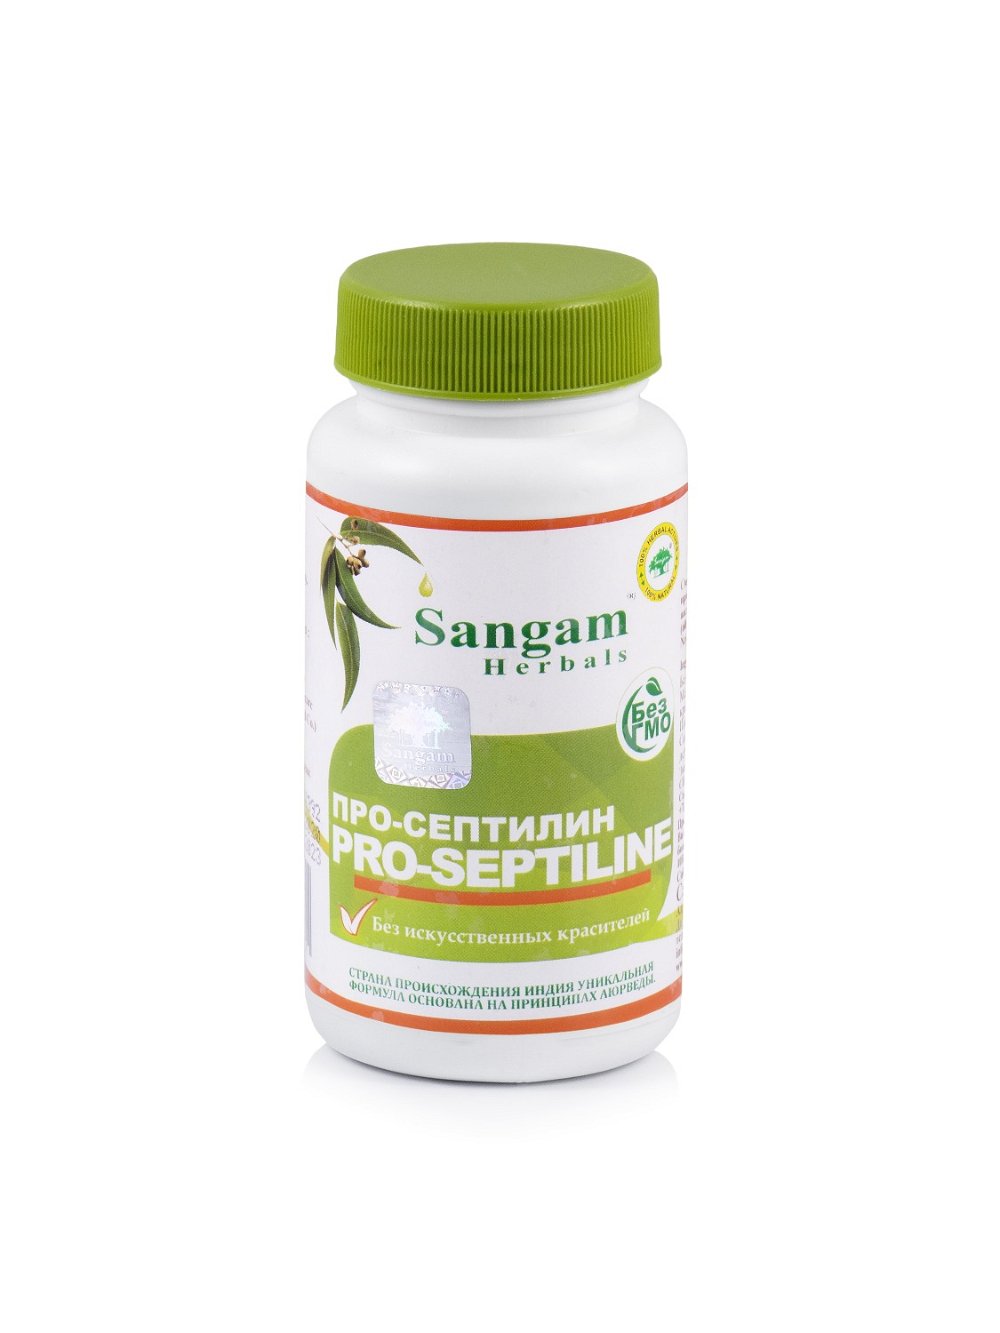 Про-Септилин Sangam Herbals (60 таблеток), Про-Септилин